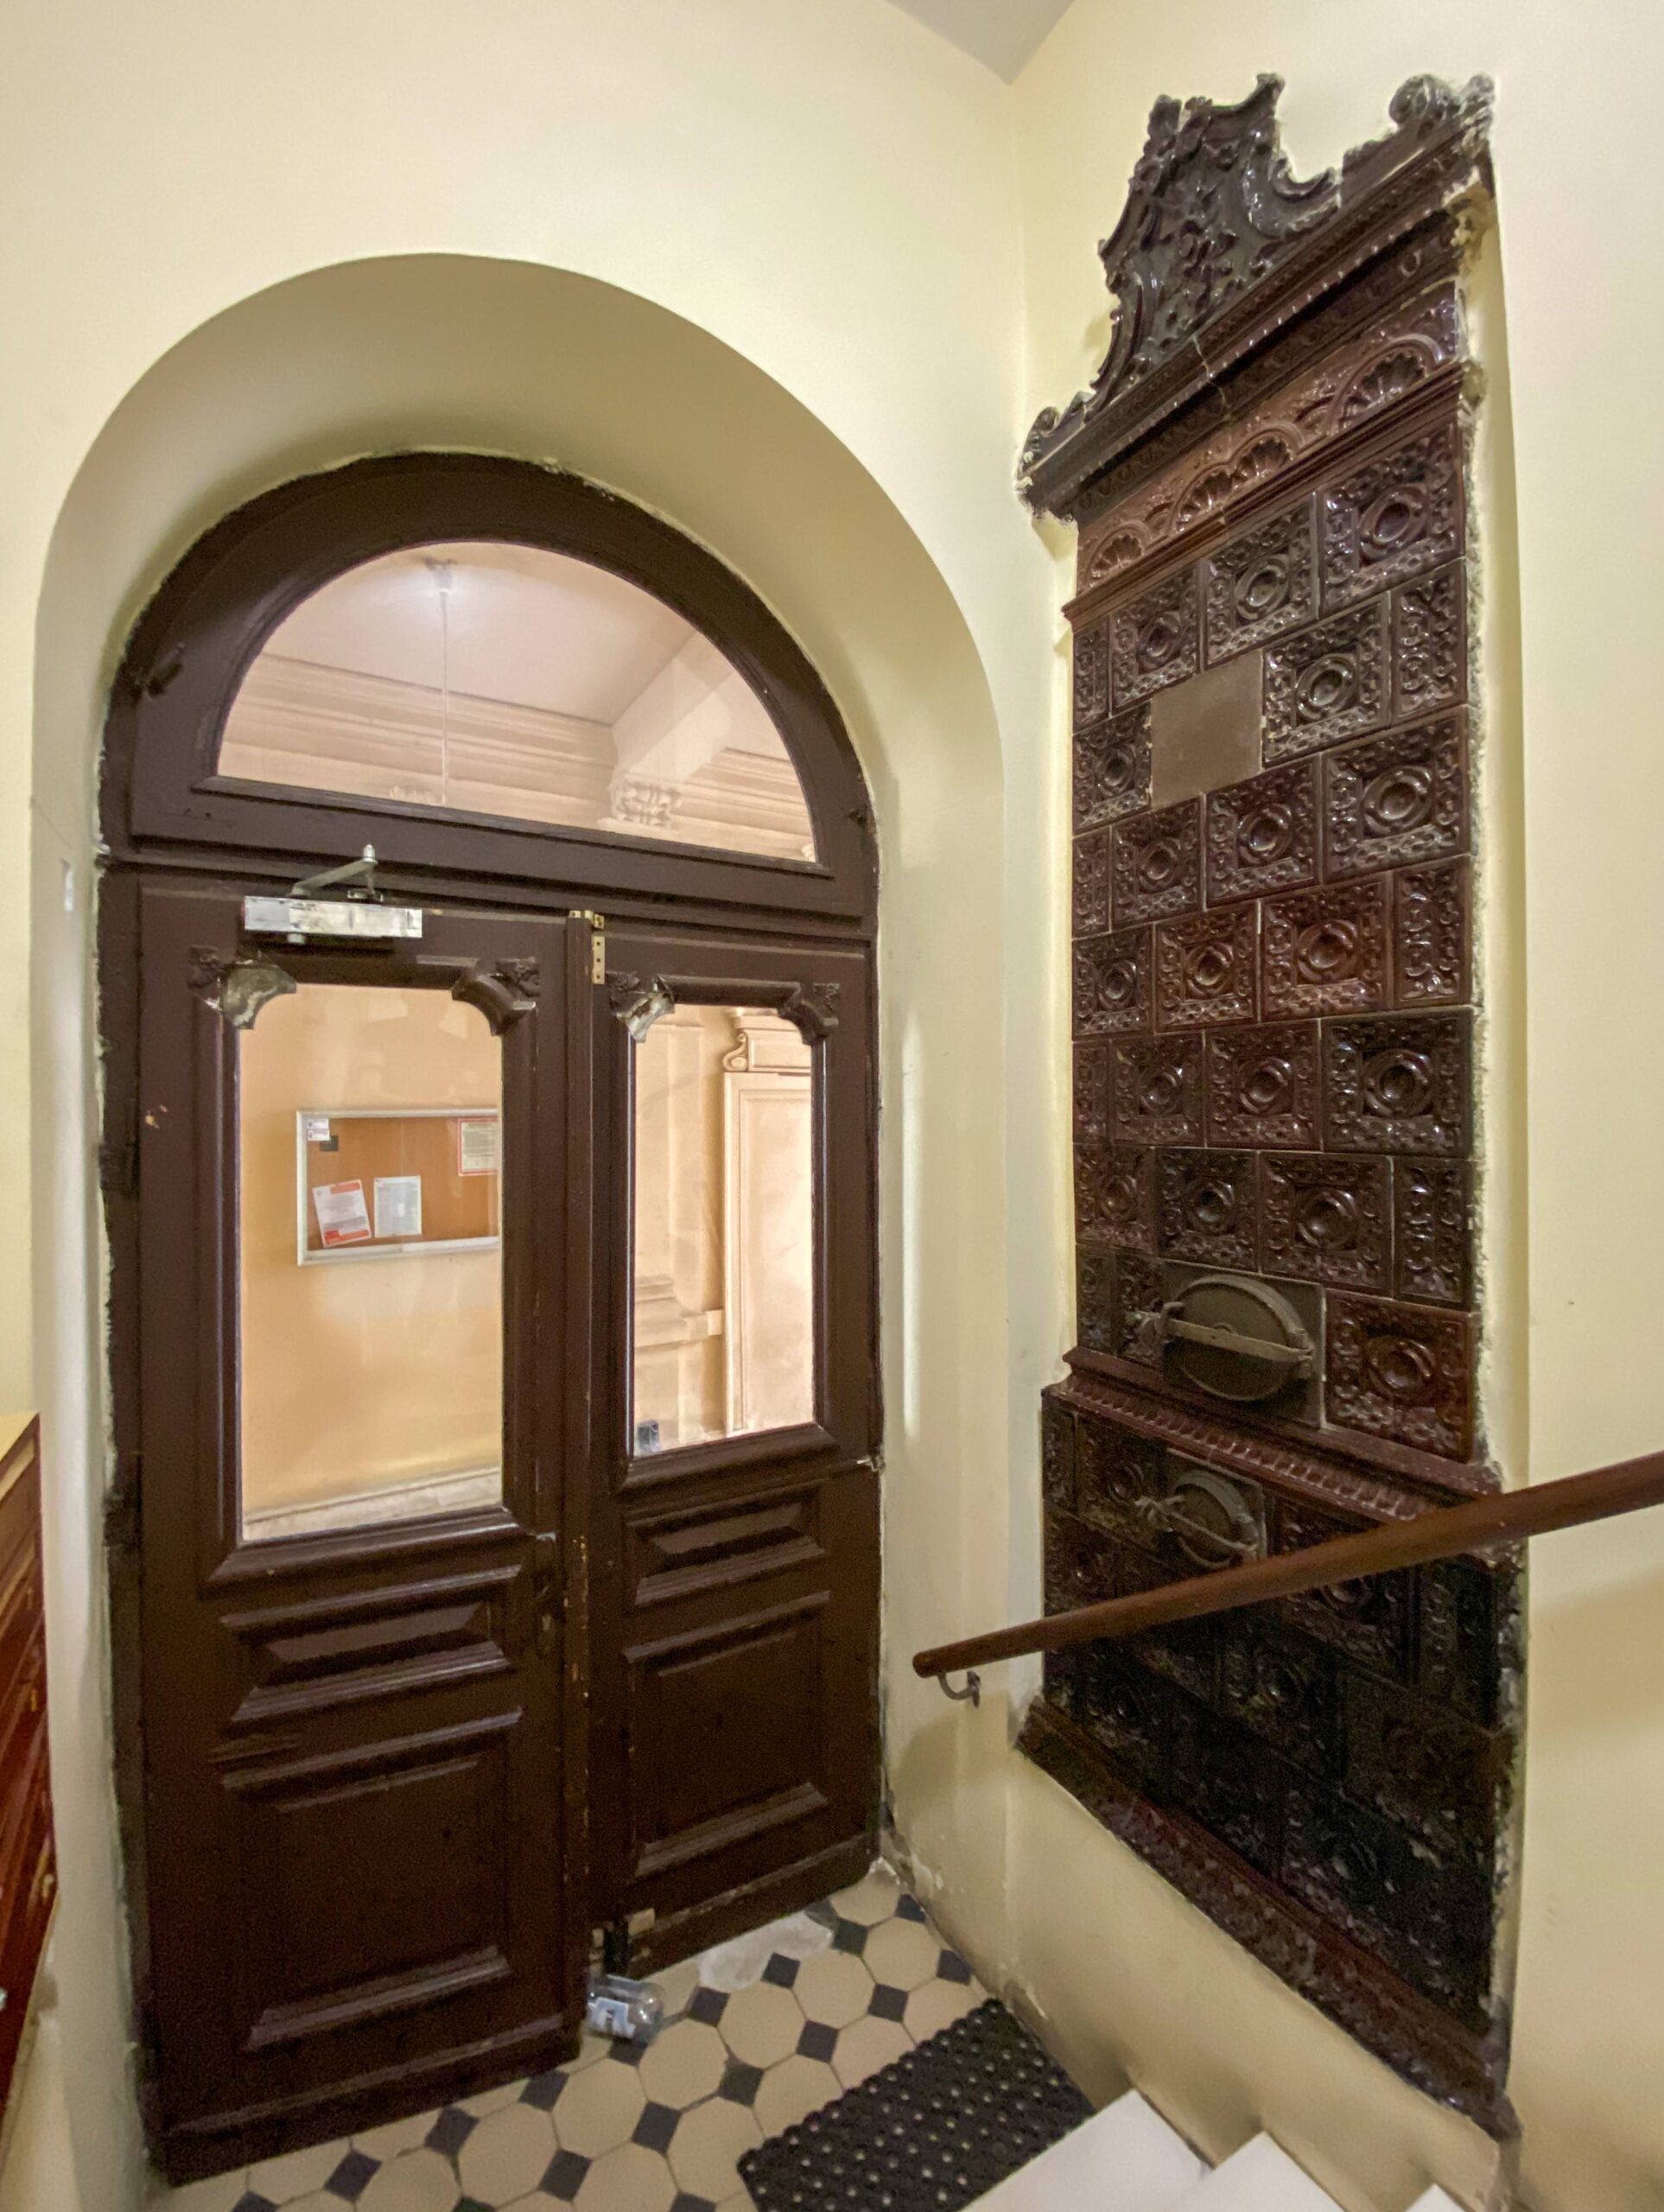 Drzwi z głównej klatki schodowej do bramy. Piec przy wejściu. Fot. Wojciech Kmieć 2022 r., źródło: AOD III.